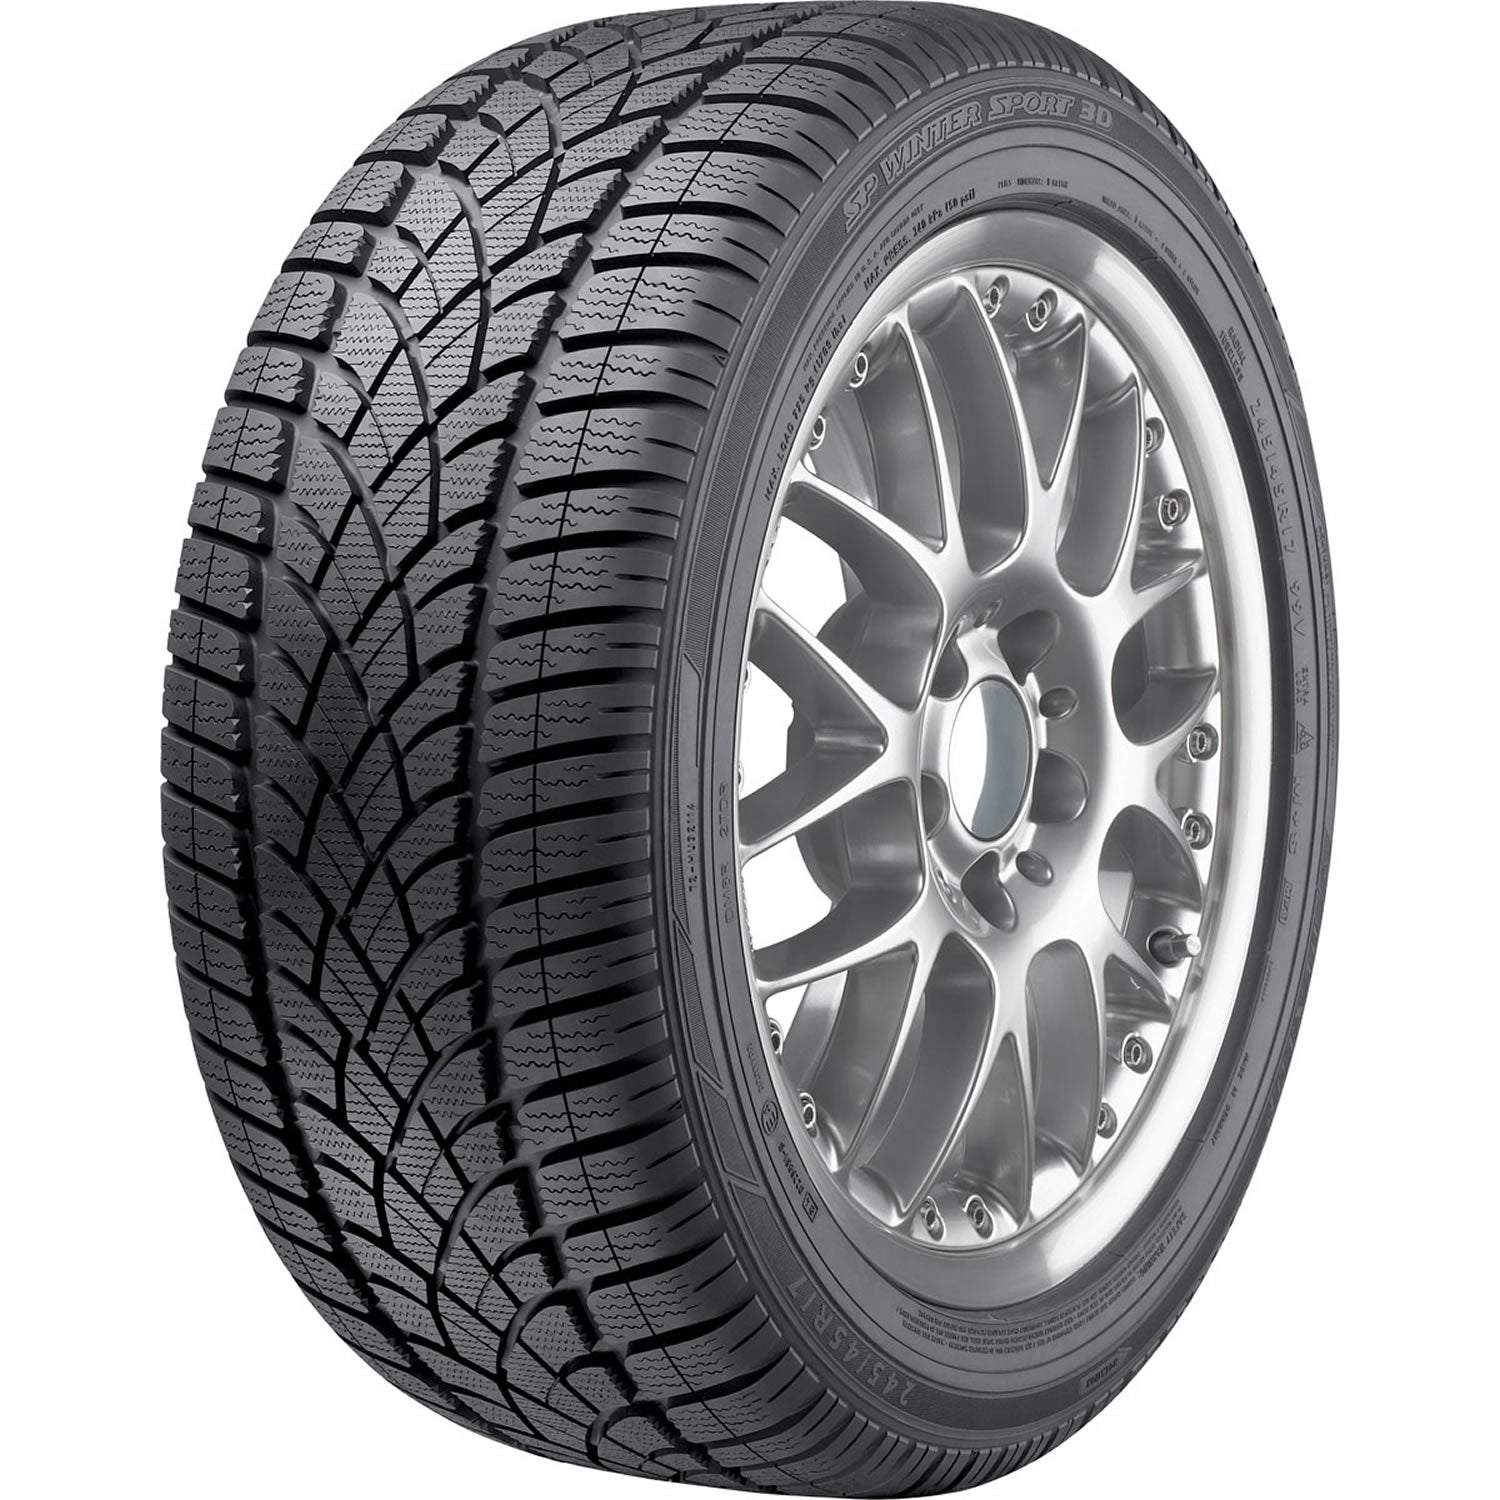 DUNLOP SP WINTER SPORT 3D 225/45R18 (25.9X8.9R 18) Tires